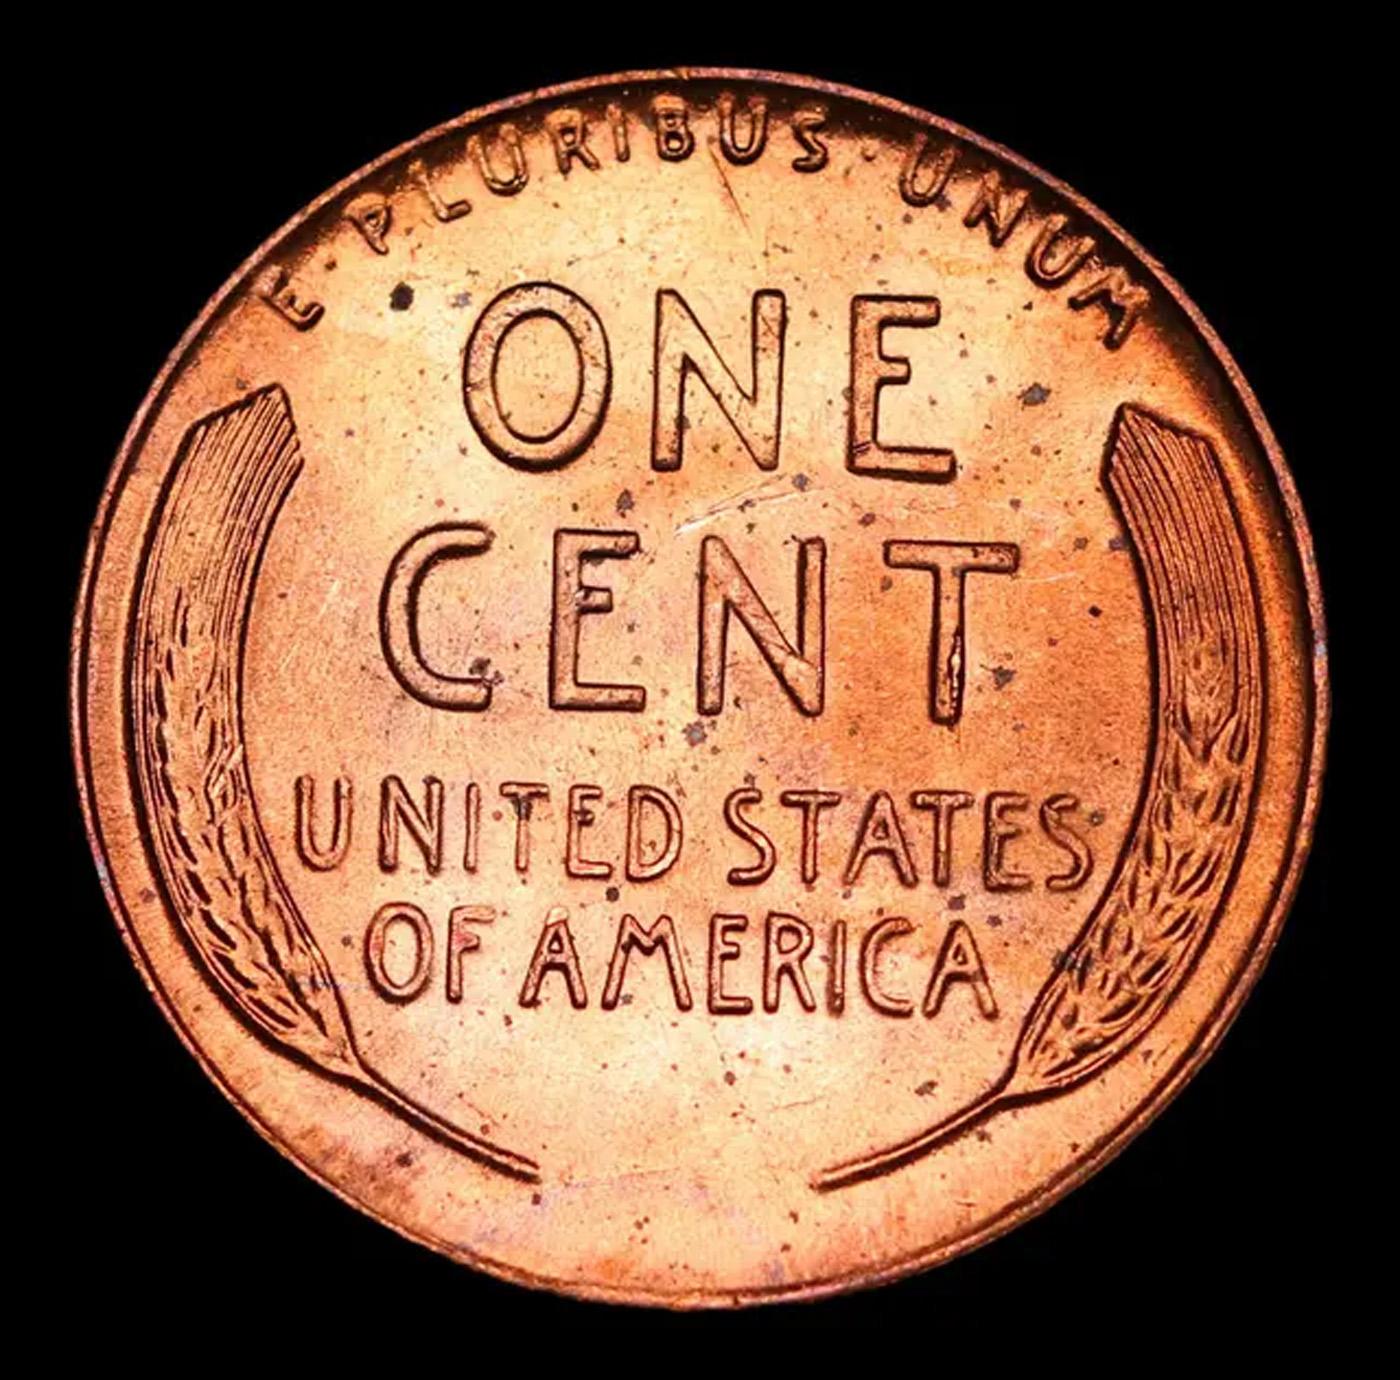 1957-p Lincoln Cent 1c Grades Gem+ Unc RD